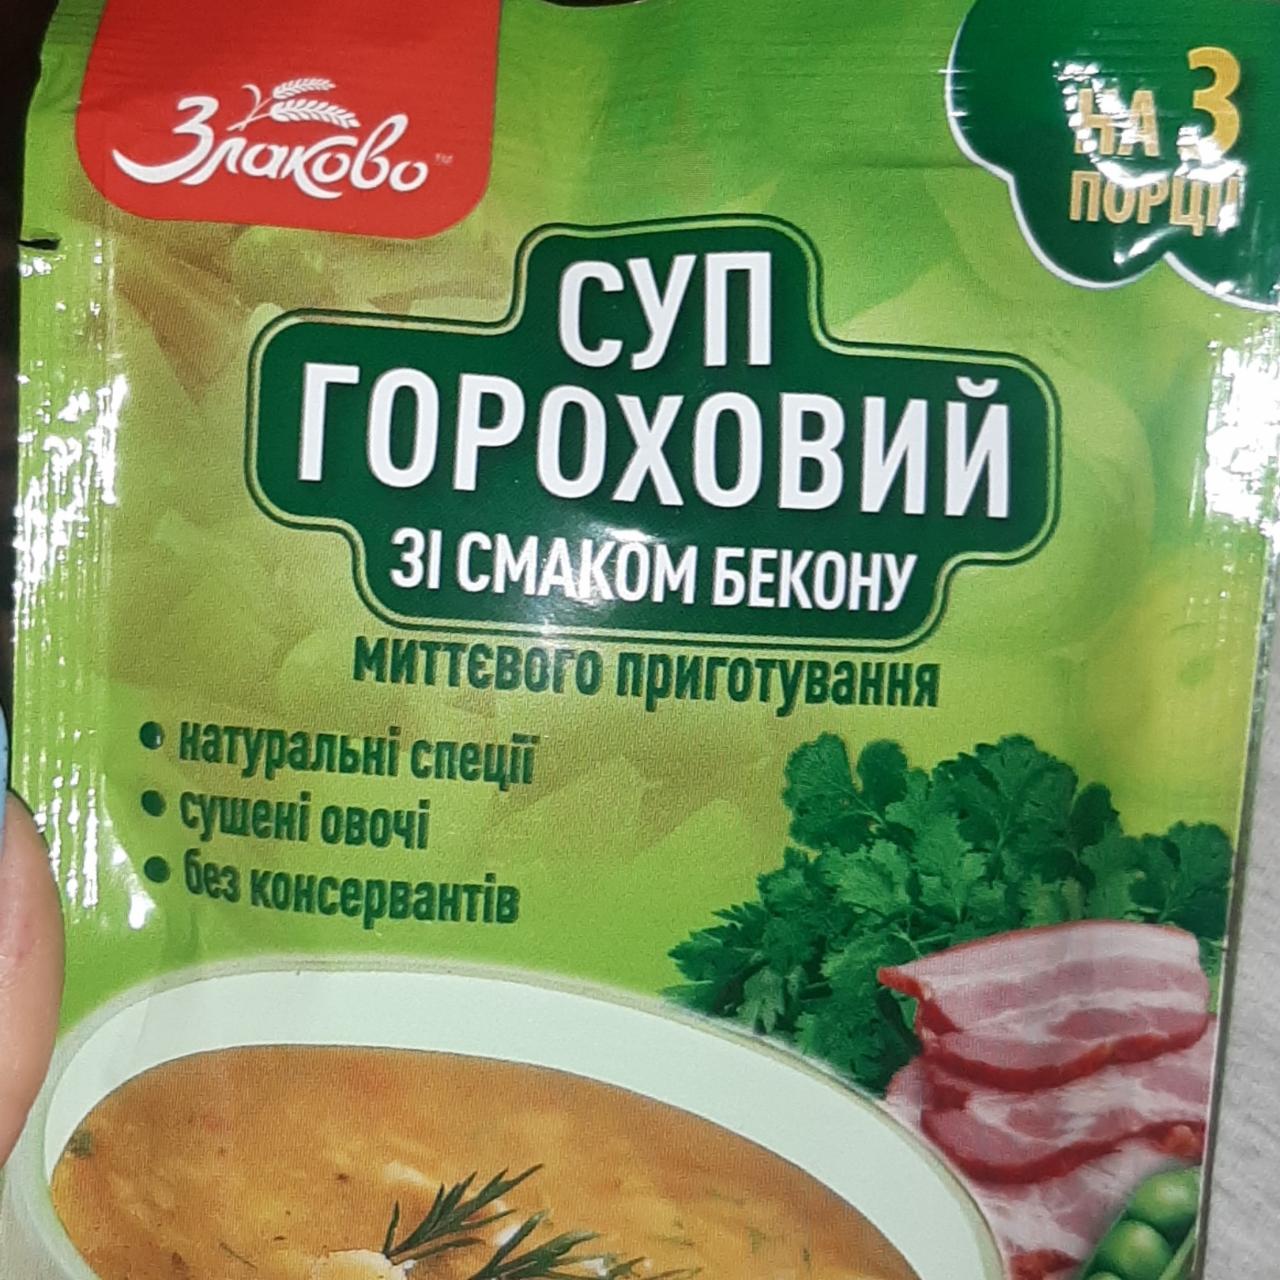 Фото - Суп гороховый со вкусом бекона Злаково